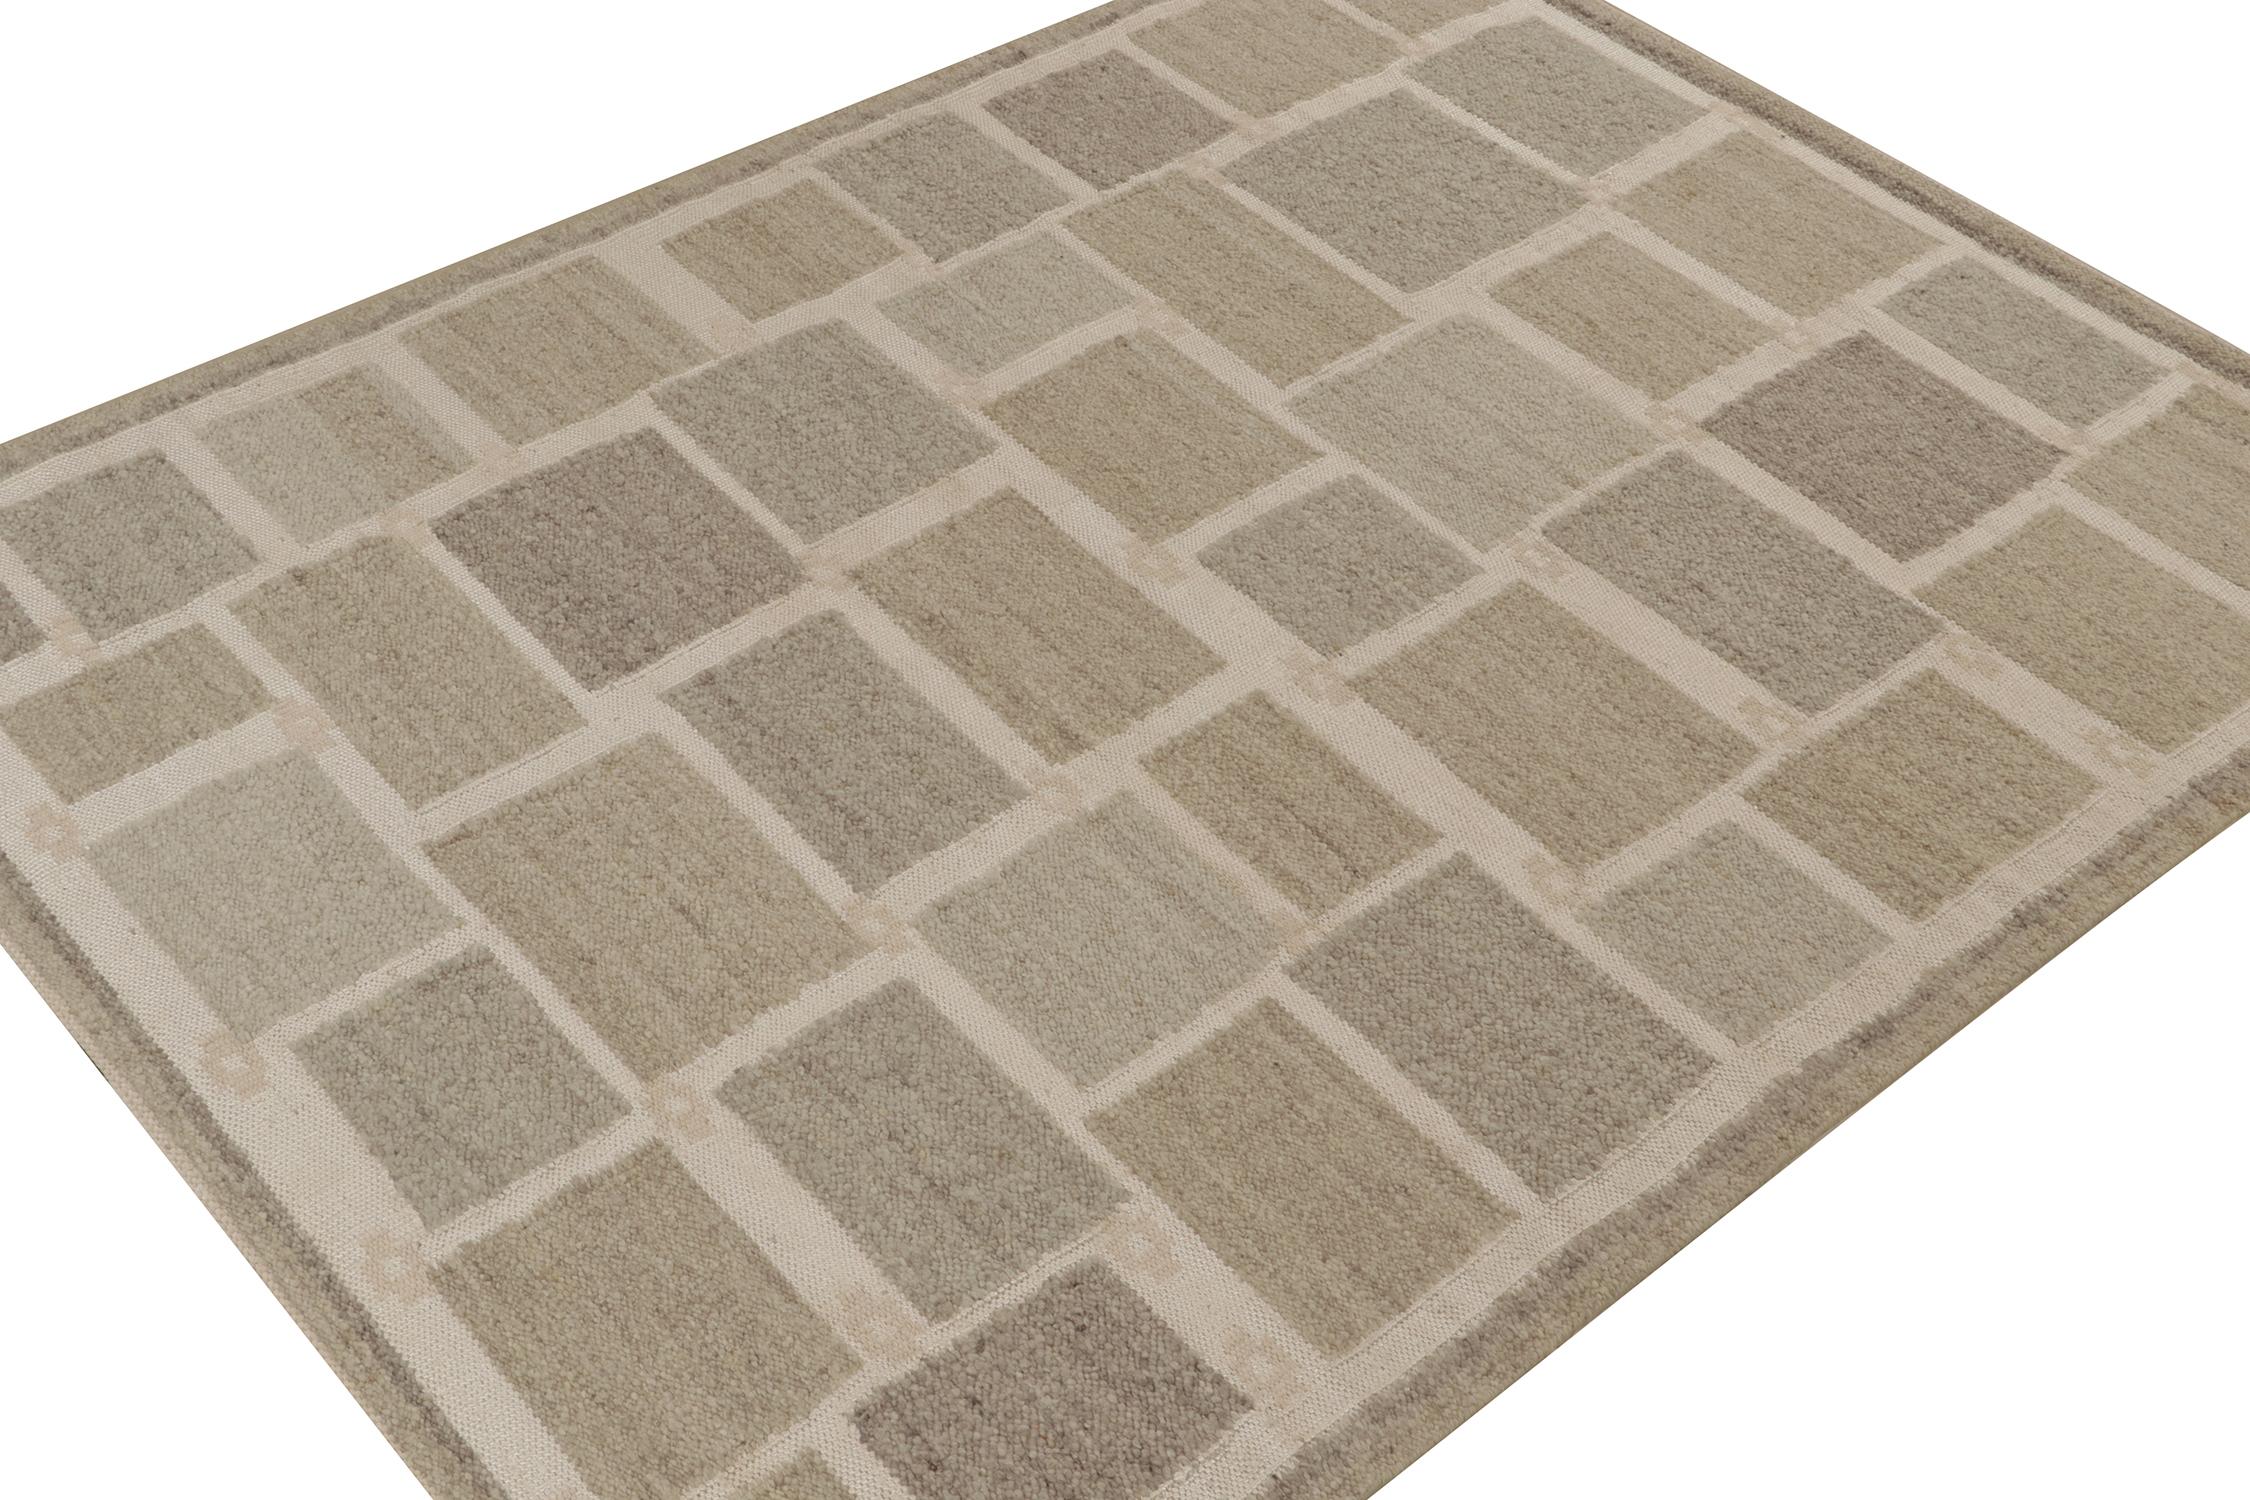 Ein eleganter 8x10 Kelim-Teppich im schwedischen Stil aus der neuen Textur unserer preisgekrönten skandinavischen Flachgewebe-Kollektion. Handgewebt aus Wolle und Baumwolle. 

Weiter zum Design: 

Unser Flachgewebe 